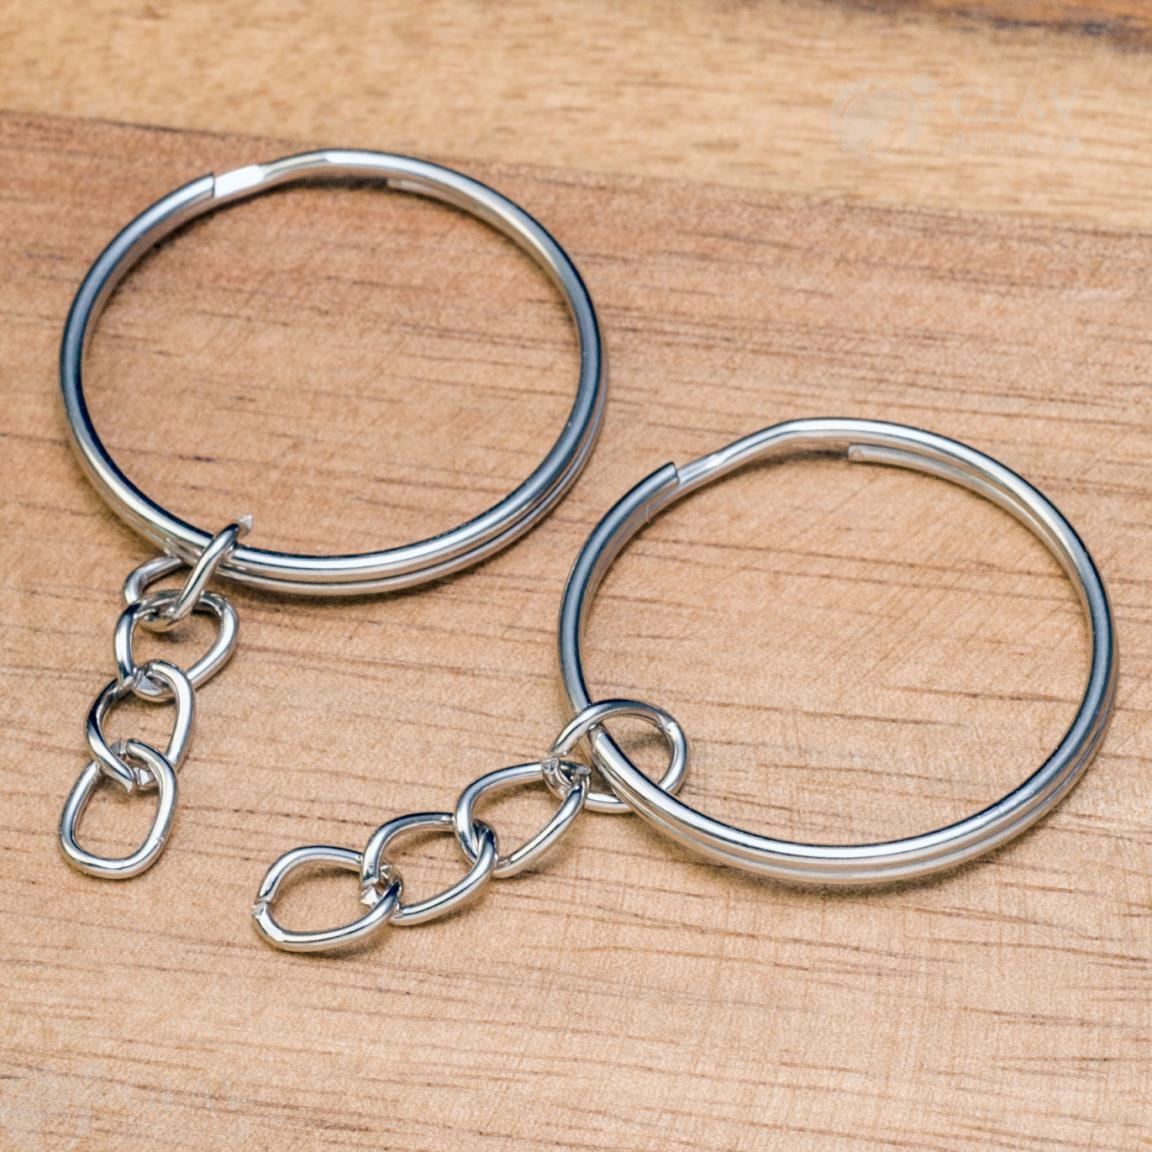 Ключевое кольцо с железной цепочкой, покрытие платиной, размер кольца 24х2х1мм, длина цепочки 20мм, звено 6х5х0.9мм. Надежное и стильное решение для хранения ключей.